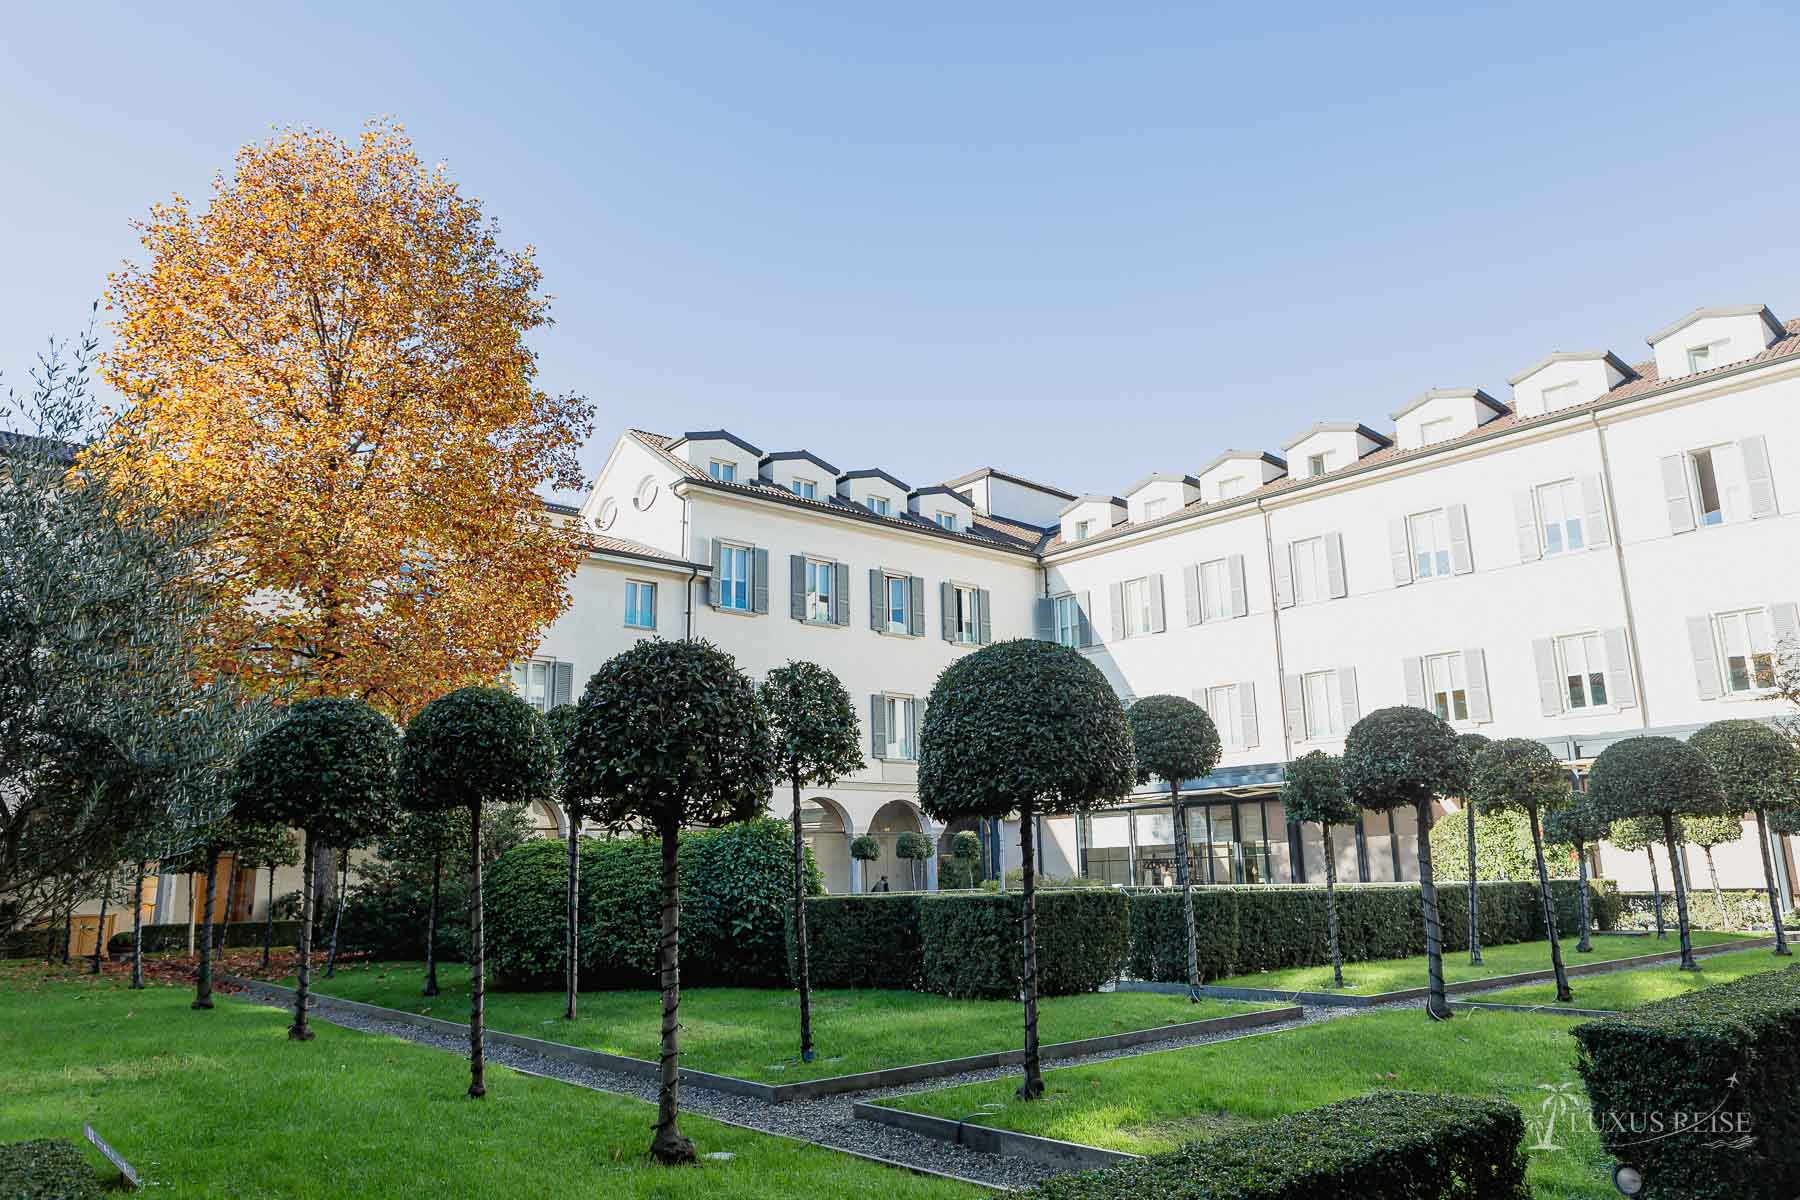 Four Seasons Hotel Mailand - Luxus in Italien genießen - Hoteleindrücke